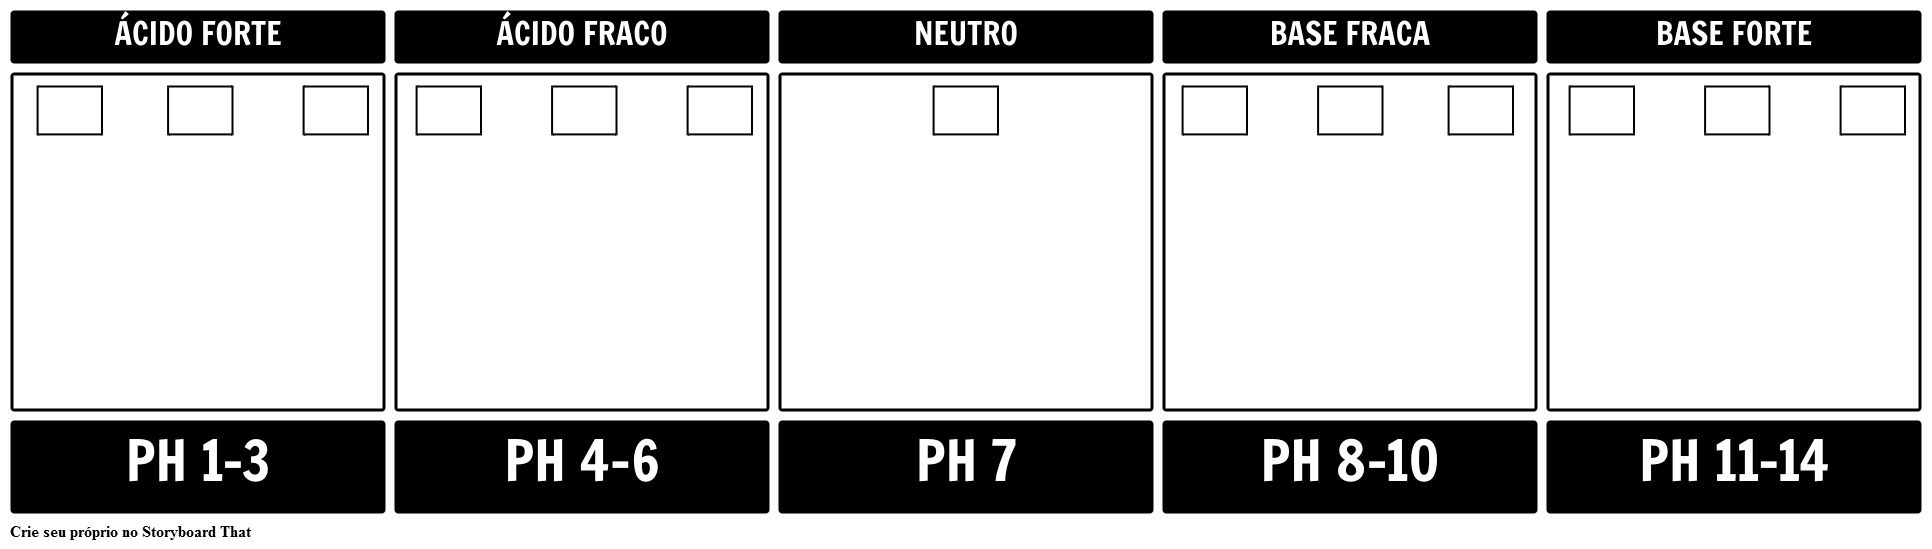 Modelo de Escala de pH